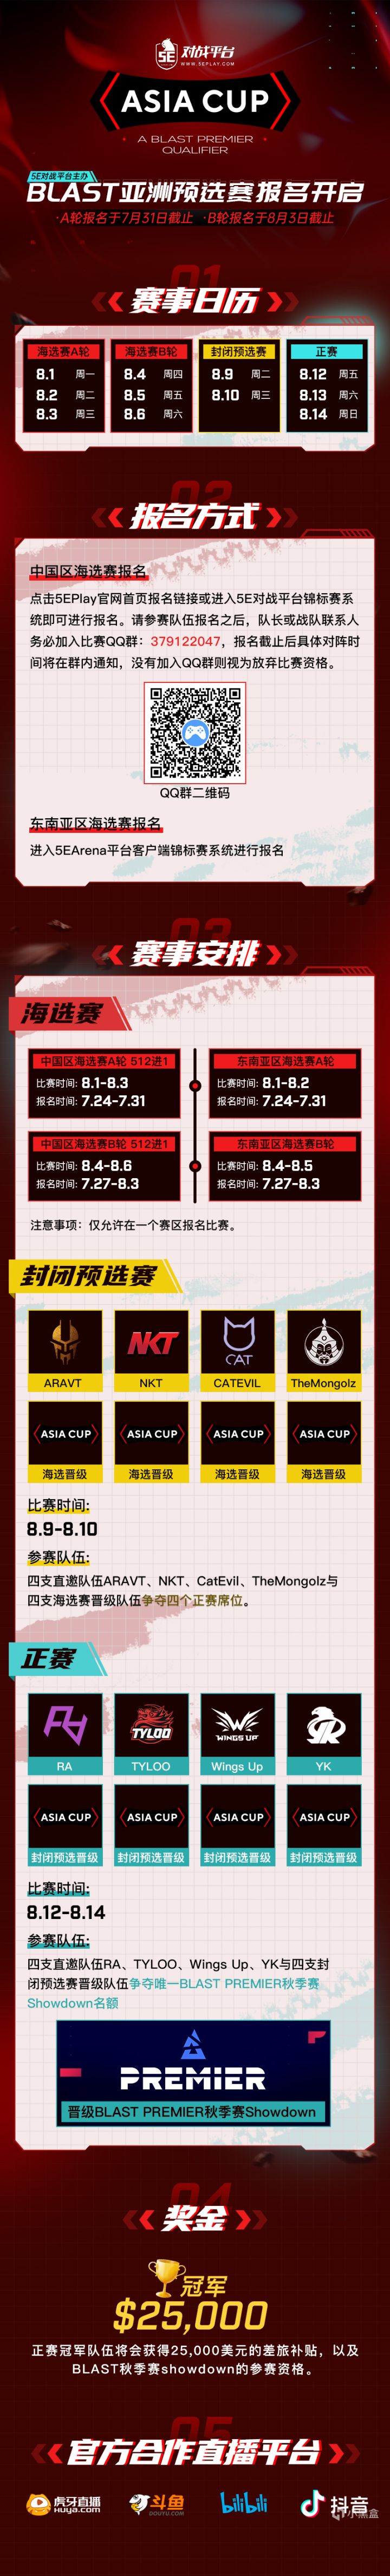 【CS:GO】5E对战平台 BLAST亚洲预选赛报名正式开启-第4张